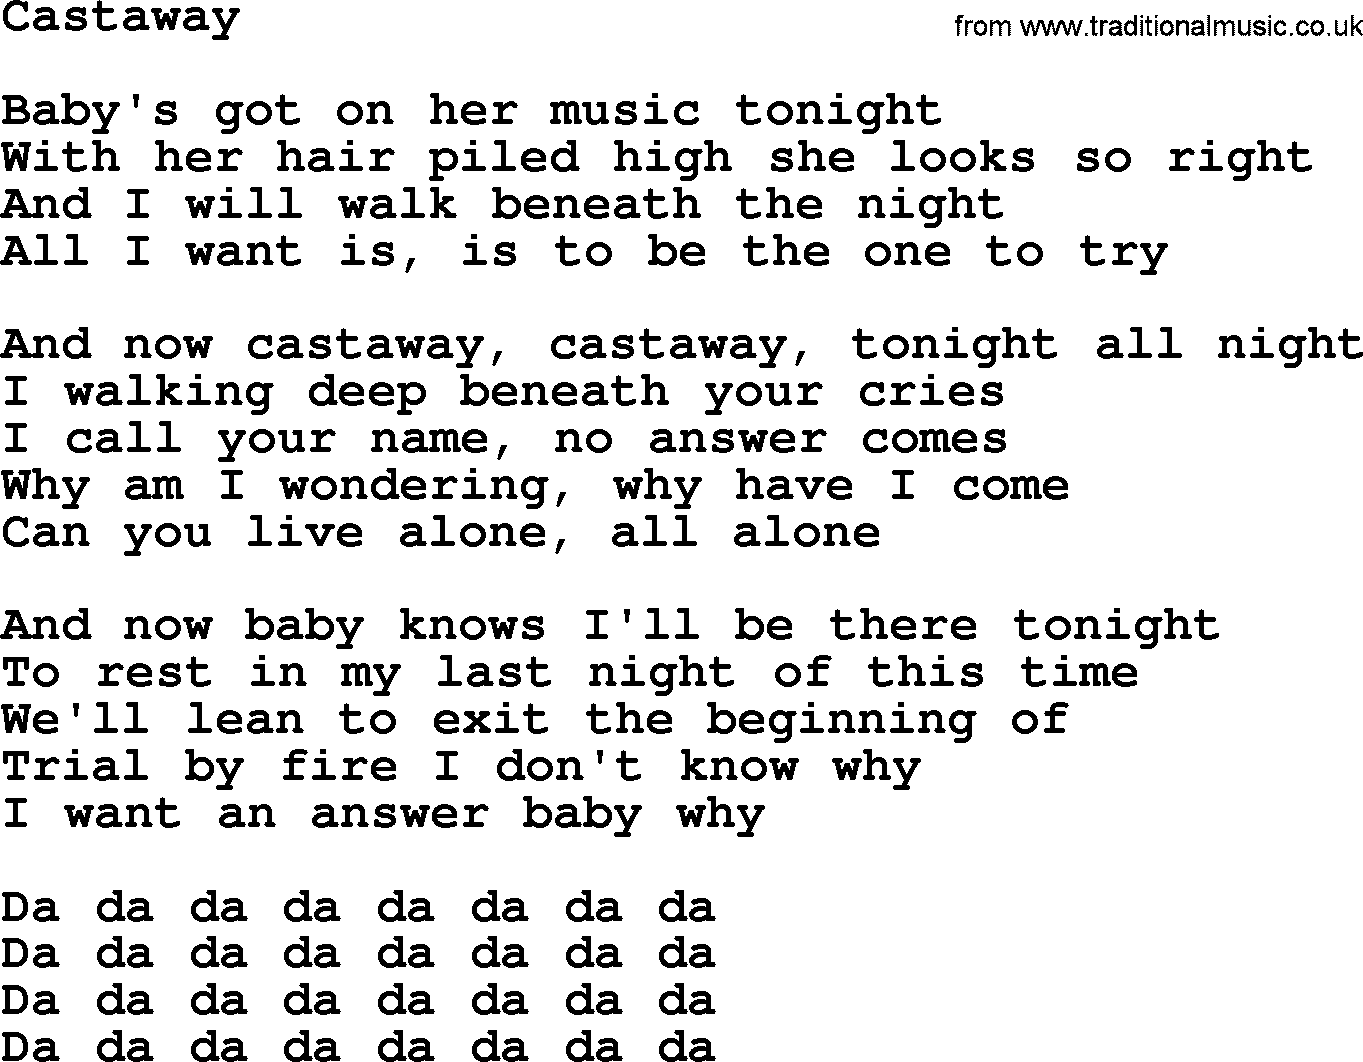 Bruce Springsteen song: Castaway lyrics